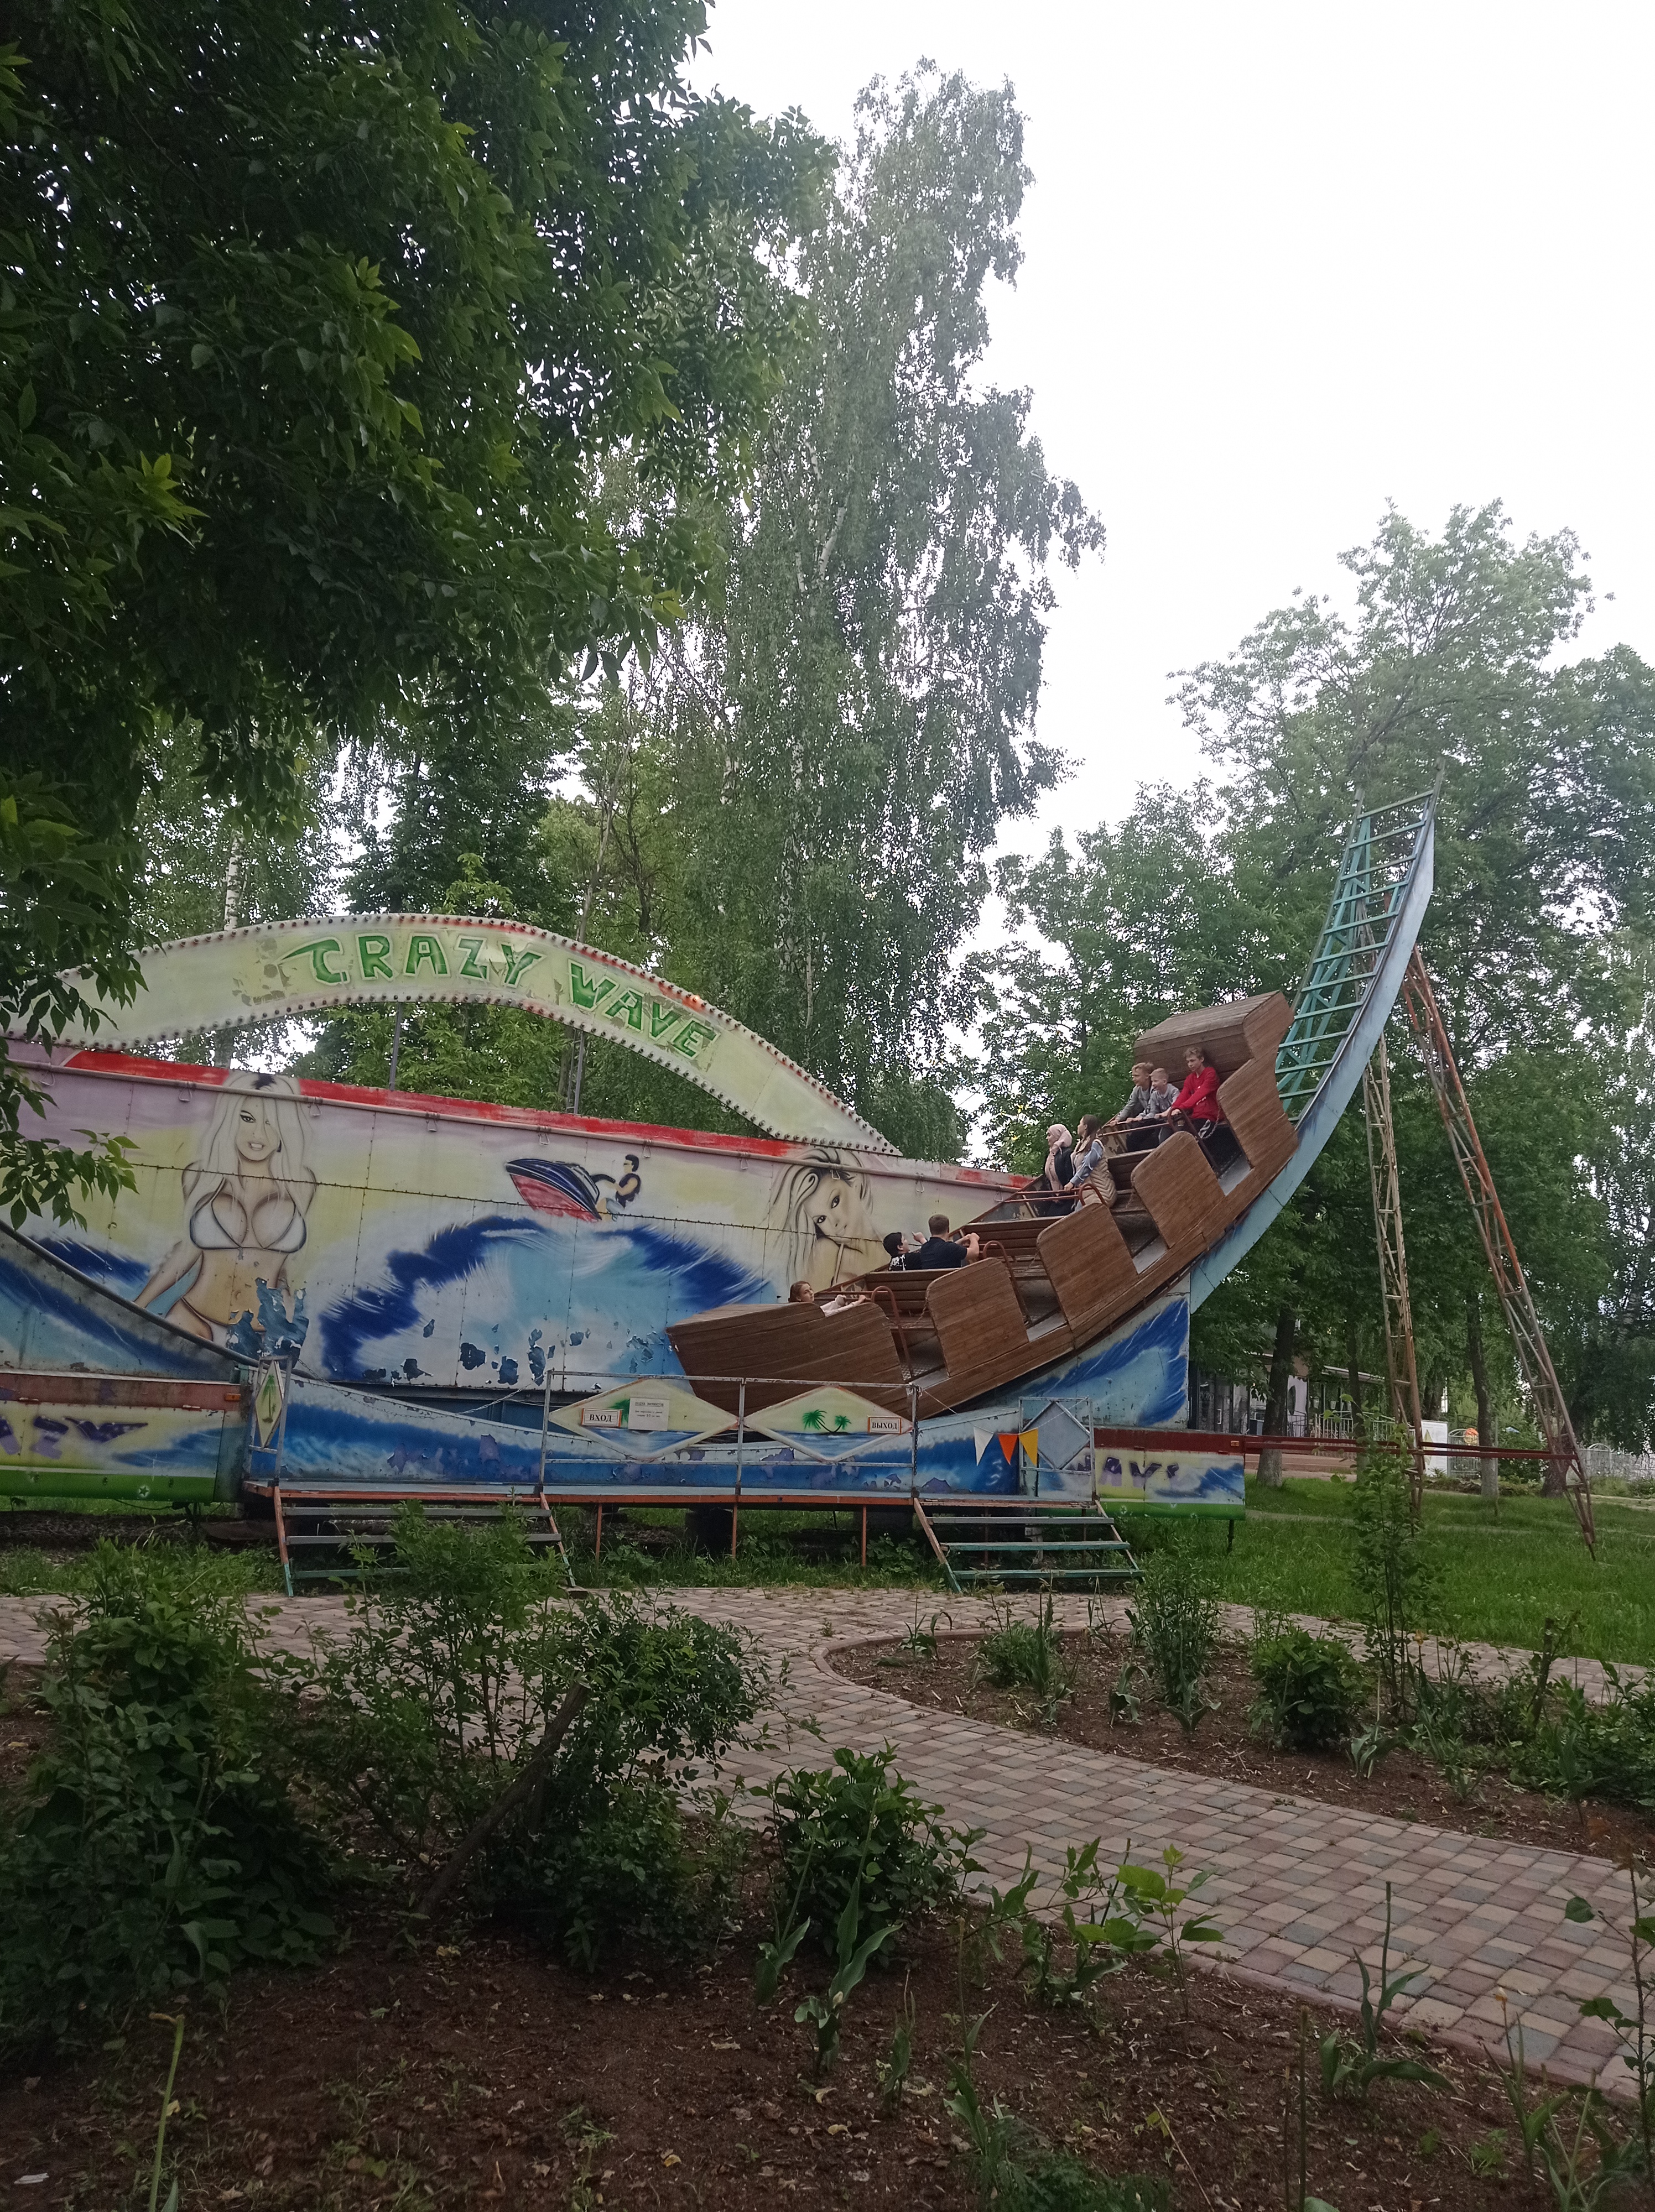 Аттракцион "Лодка Викингов", парк Степанова.